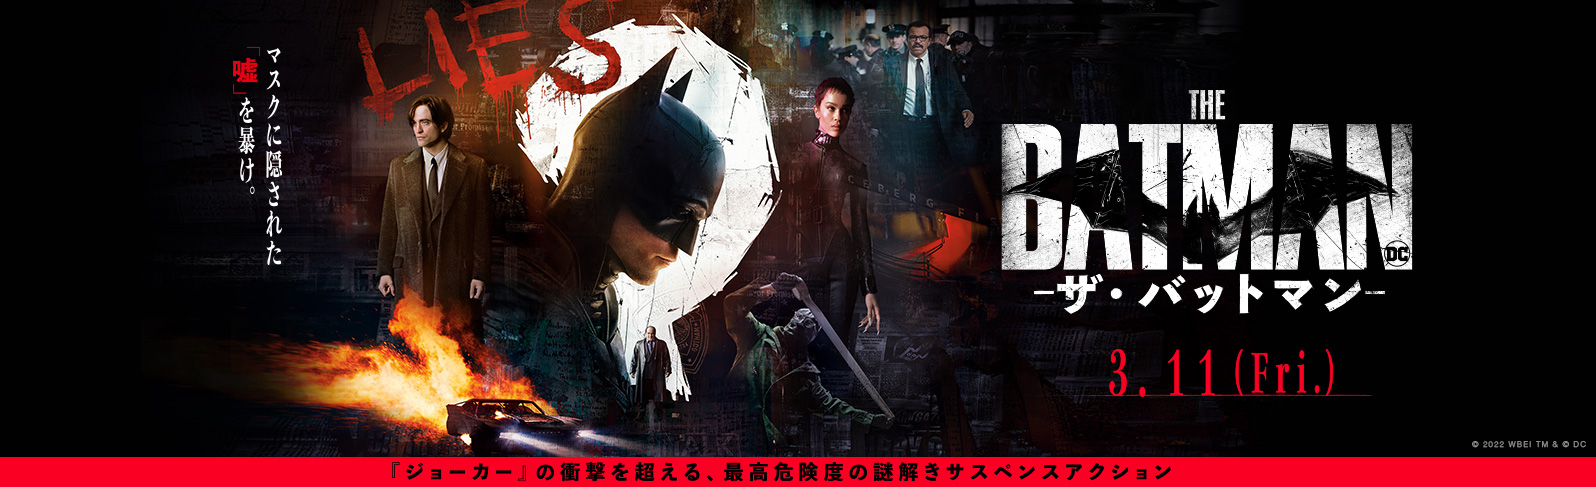 映画『THE BATMAN－ザ・バットマン－』公式サイト